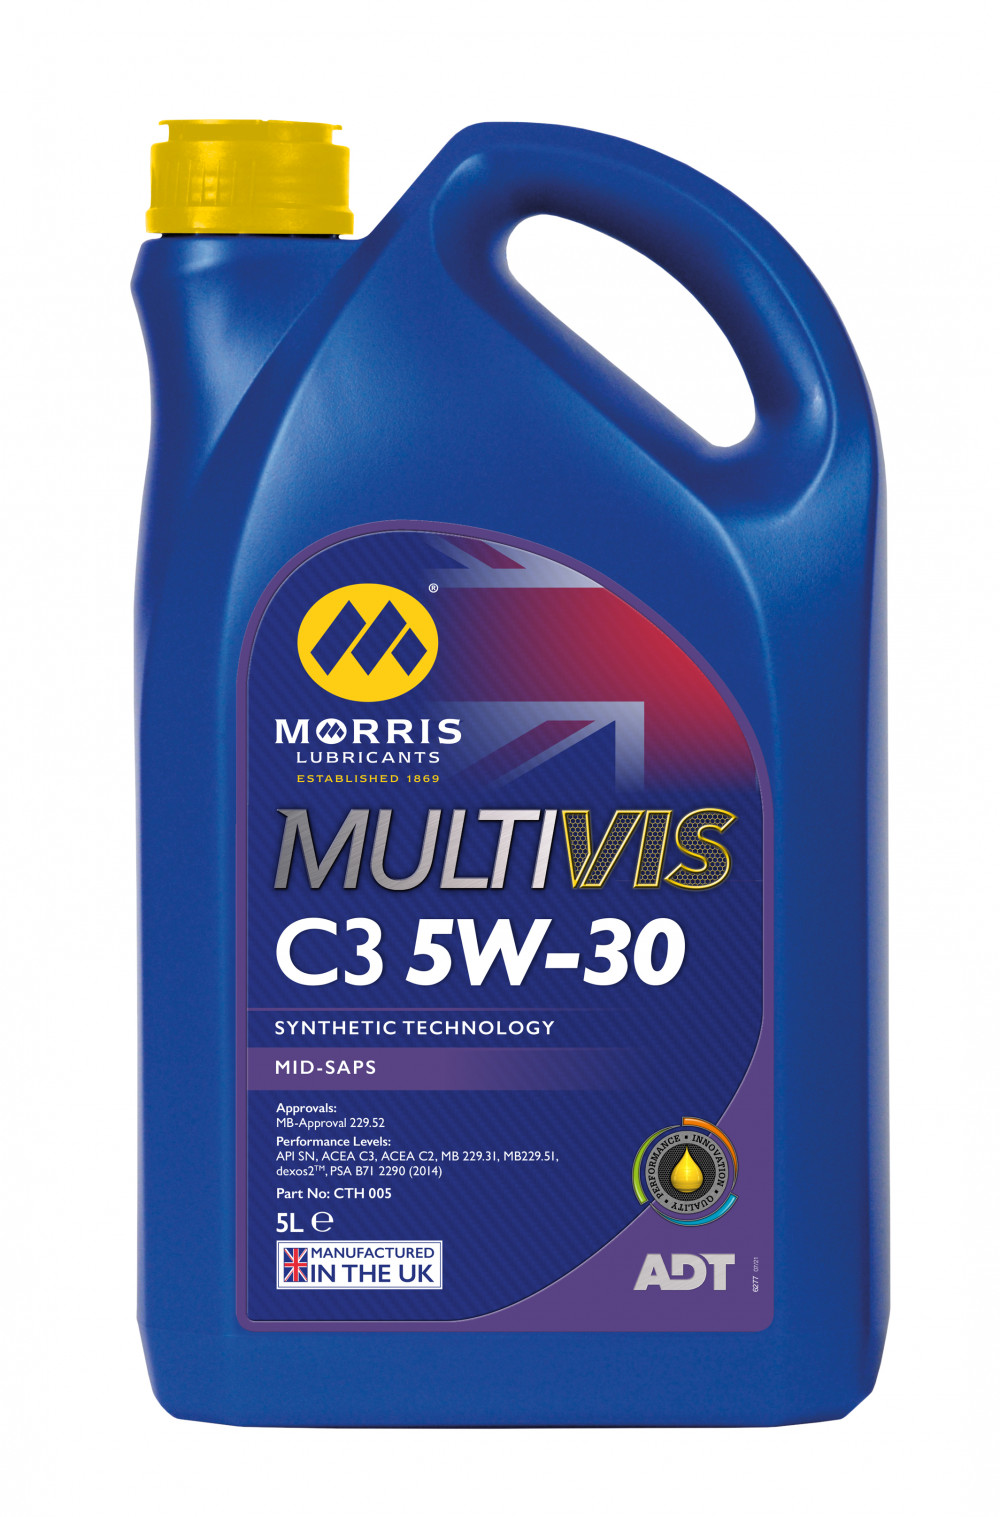 Morris Multivis ADT C3 5W-30